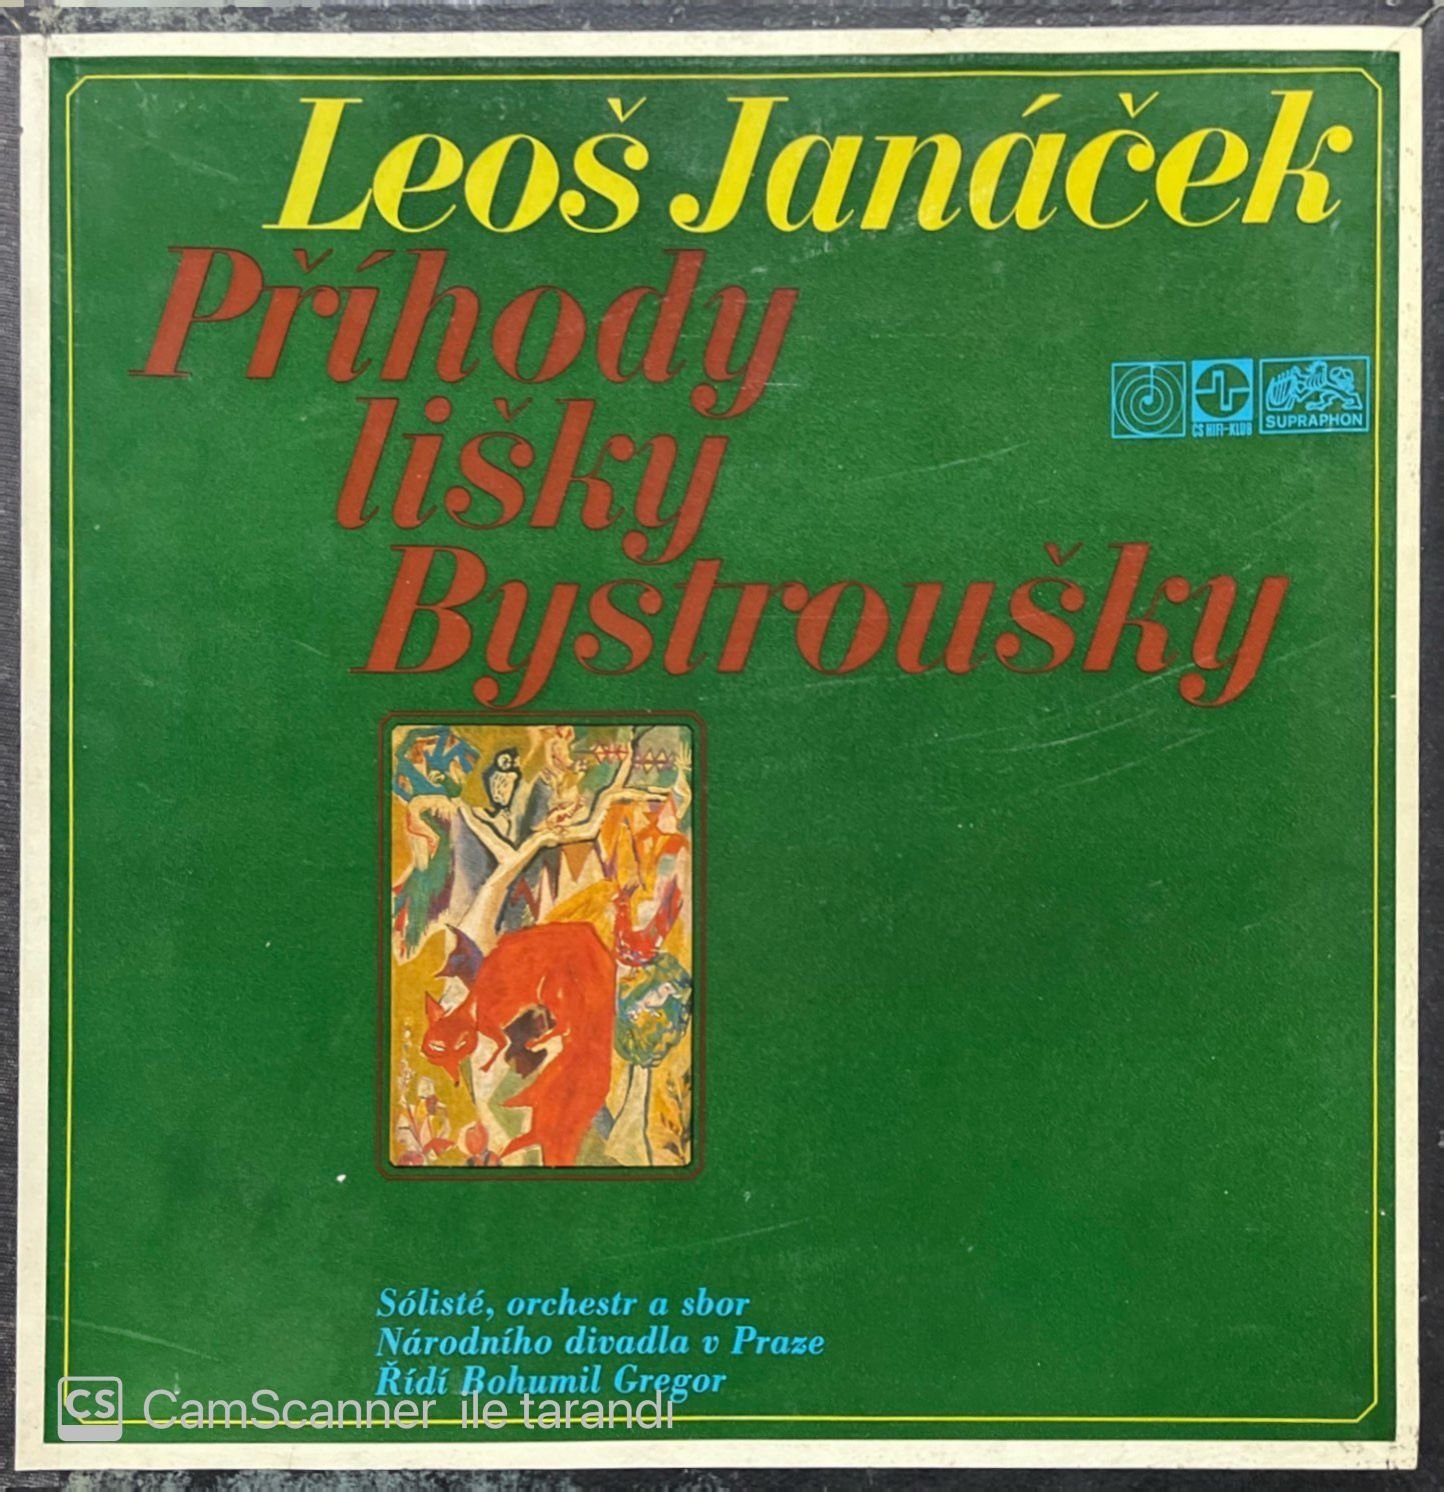 Leos Janacek Prihody Lisky Bystrousky 2 LP Box Set Plak